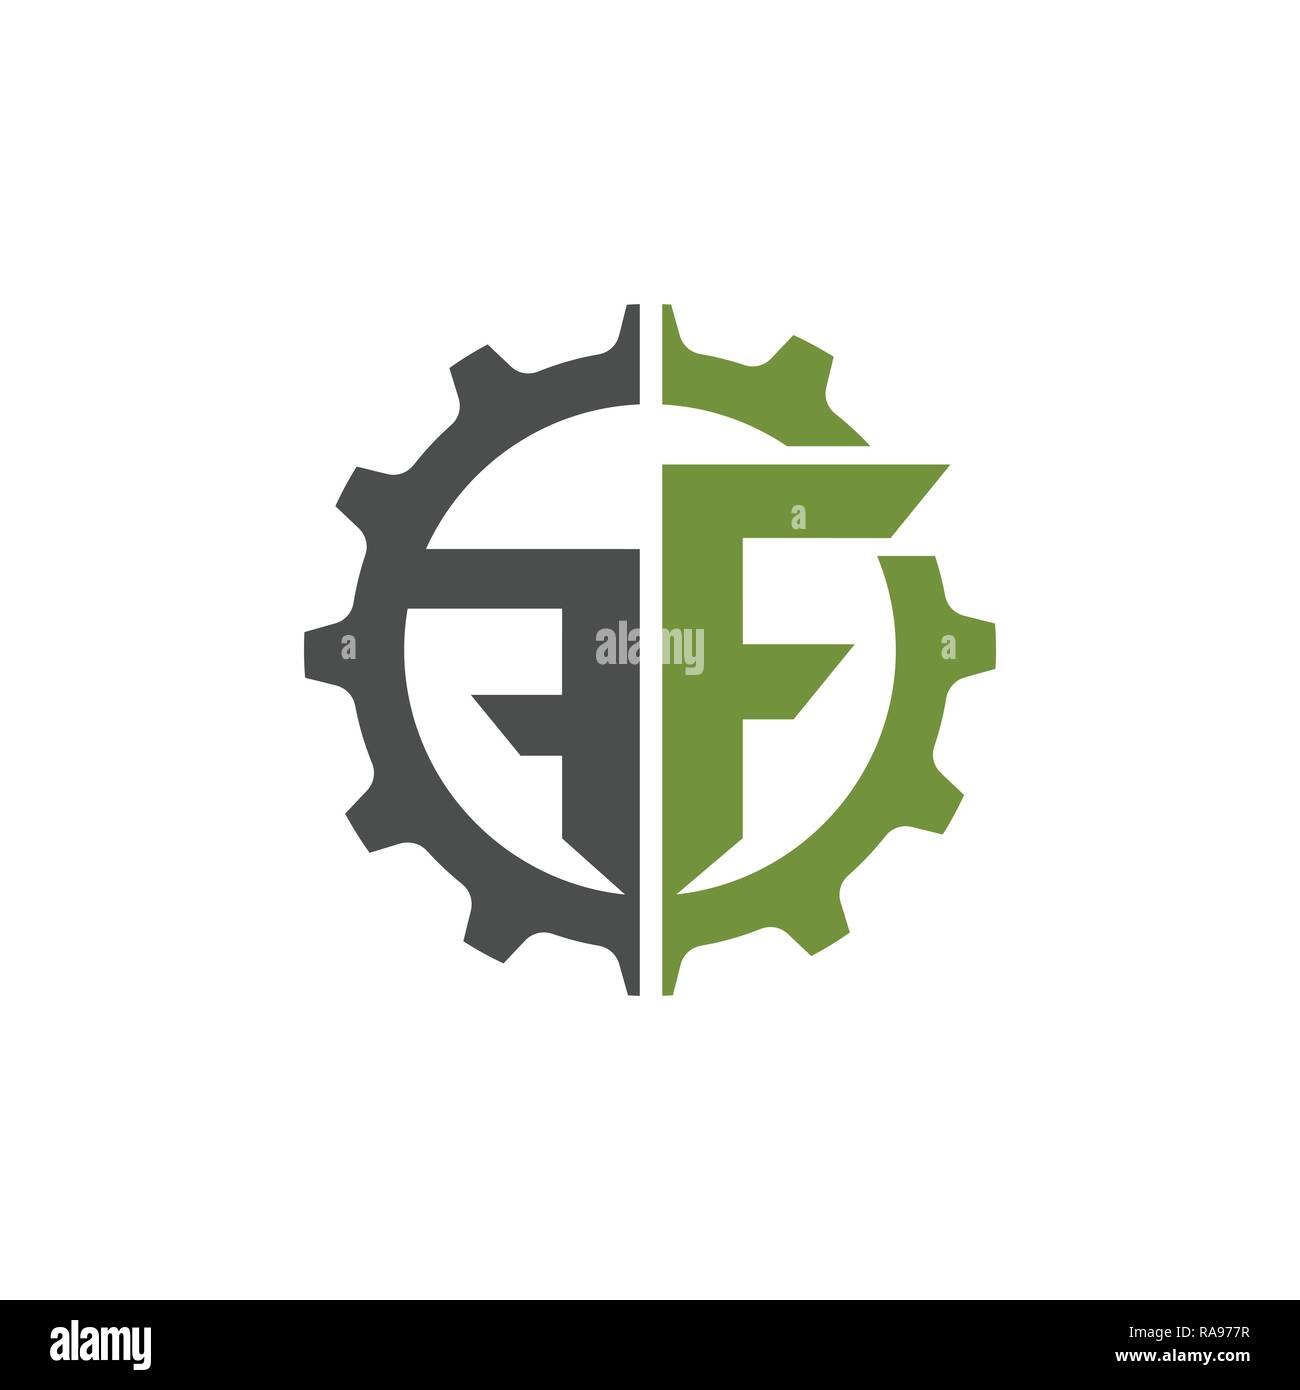 Kreatives Schreiben F quadratische Logo template Vector Illustration, Logo für Corporate Identity der Firma der Buchstabe F, typographische Schrift Stock Vektor